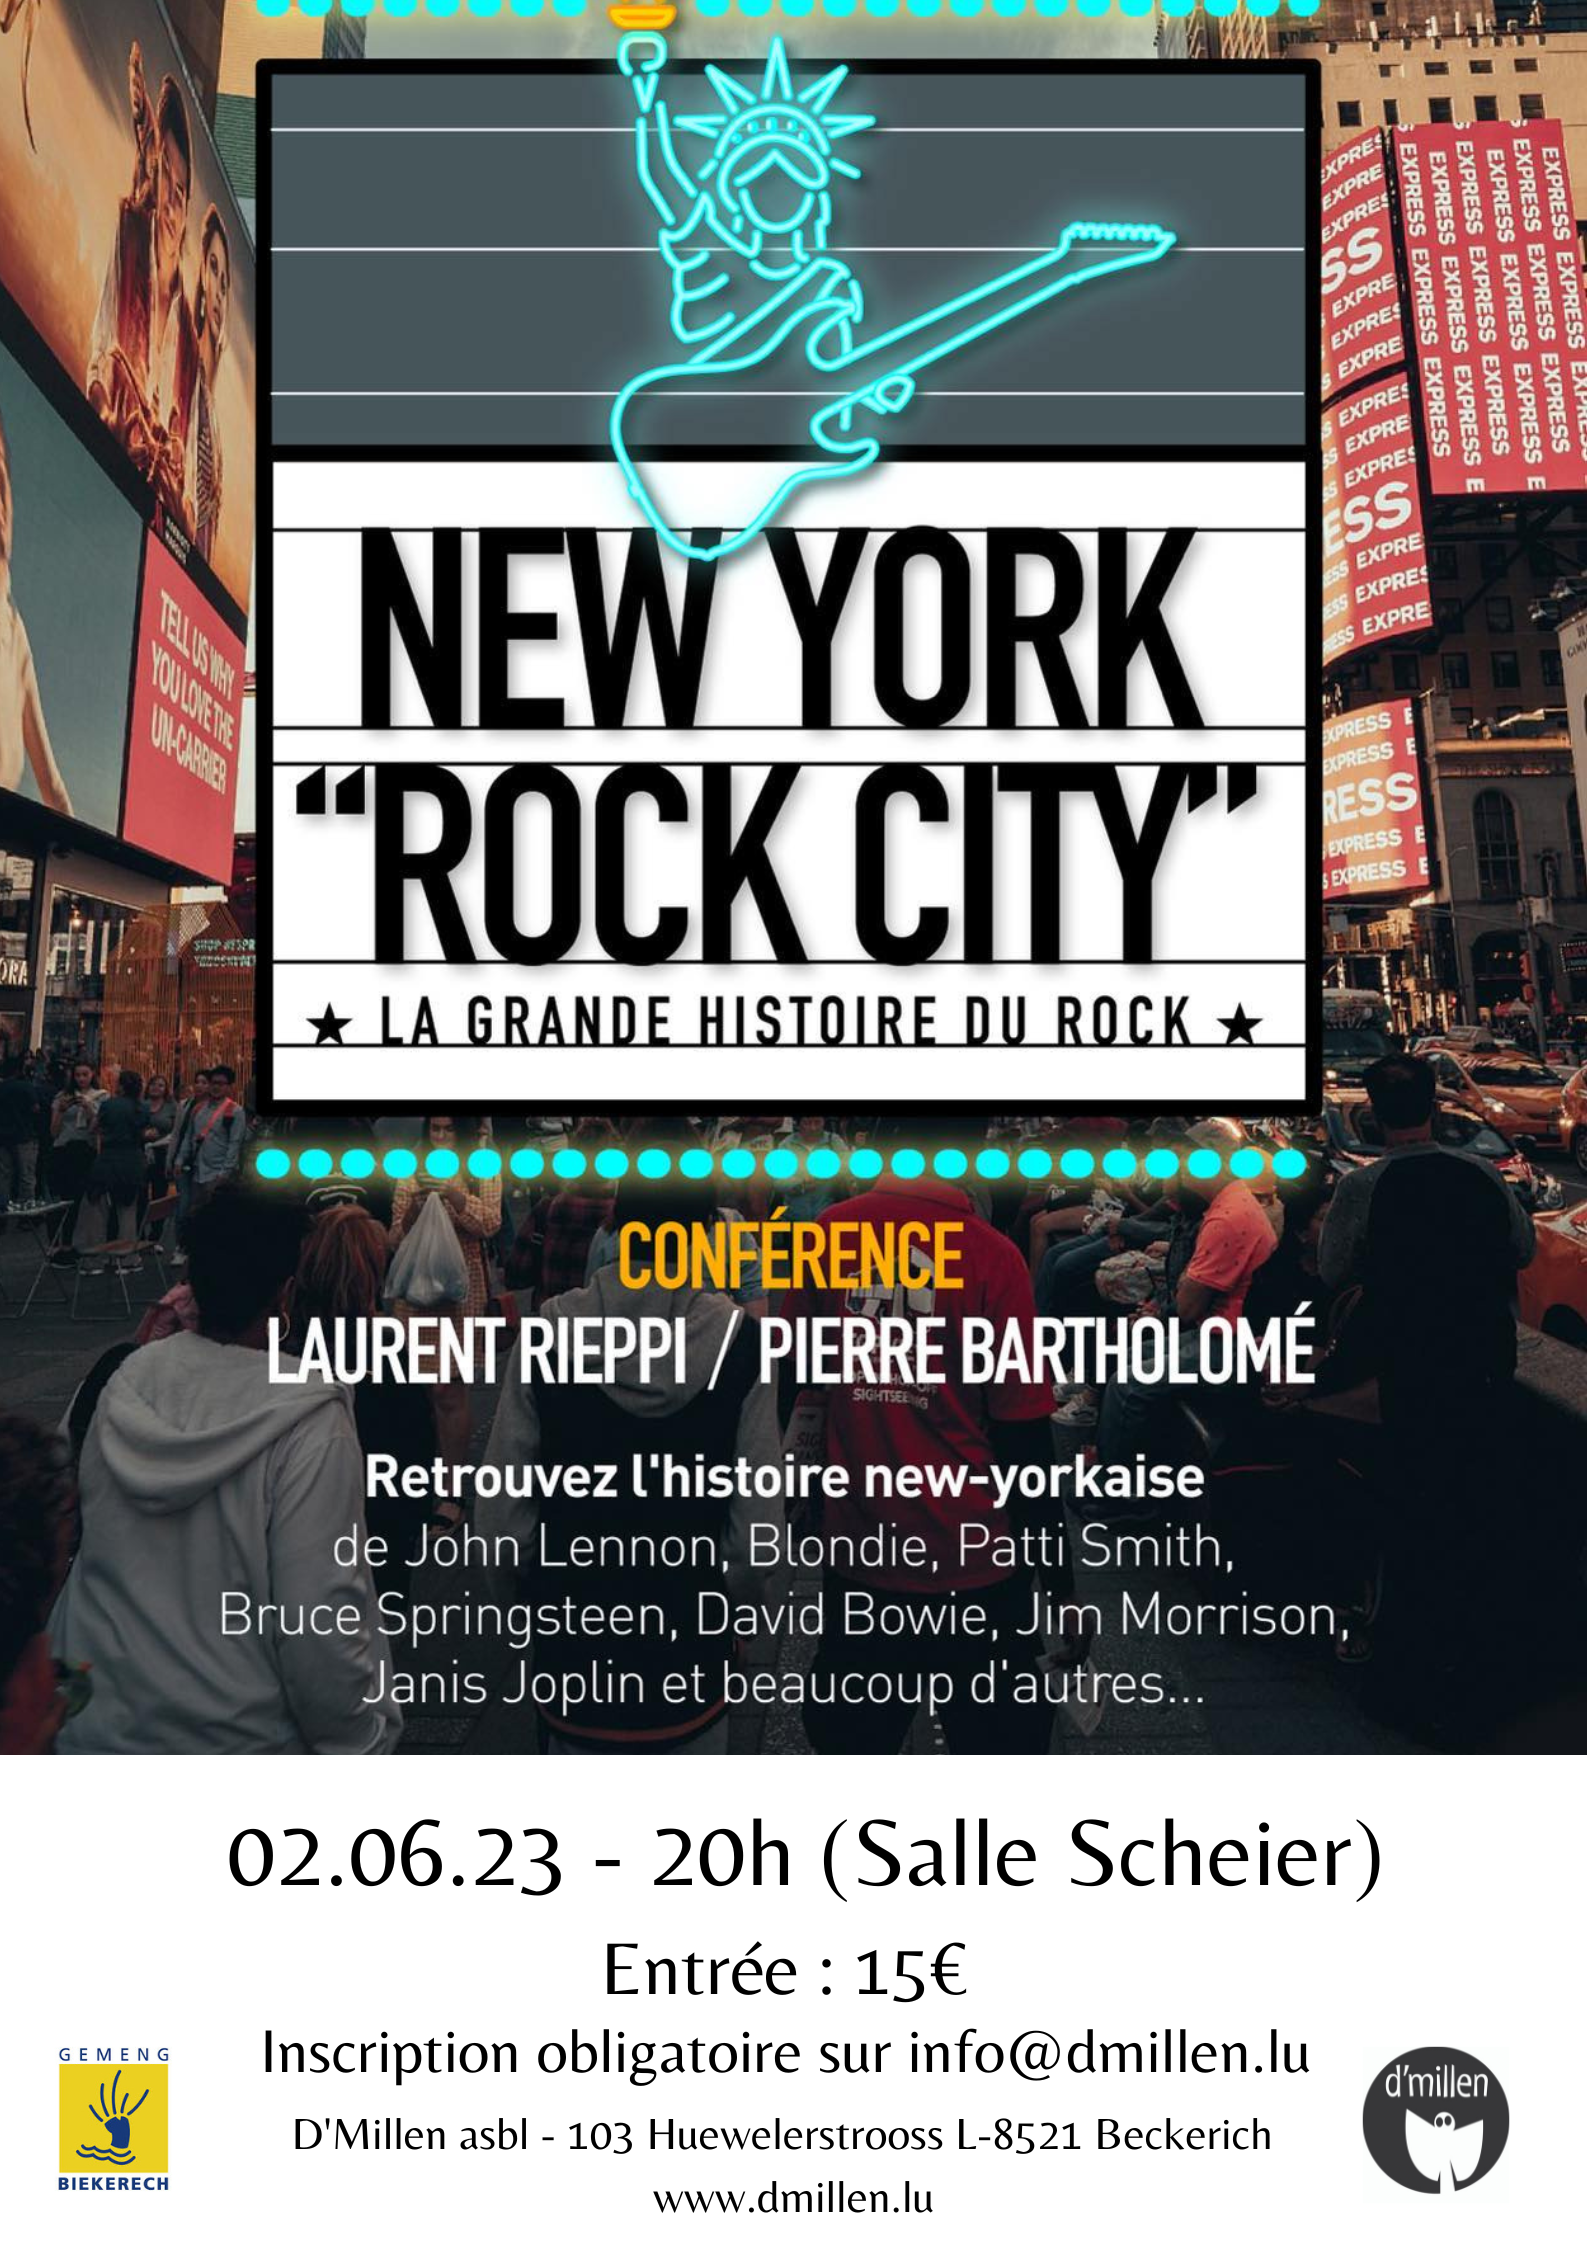 New York "Rock City" -conférence de Laurent Rieppi et Pierre bartholoomé